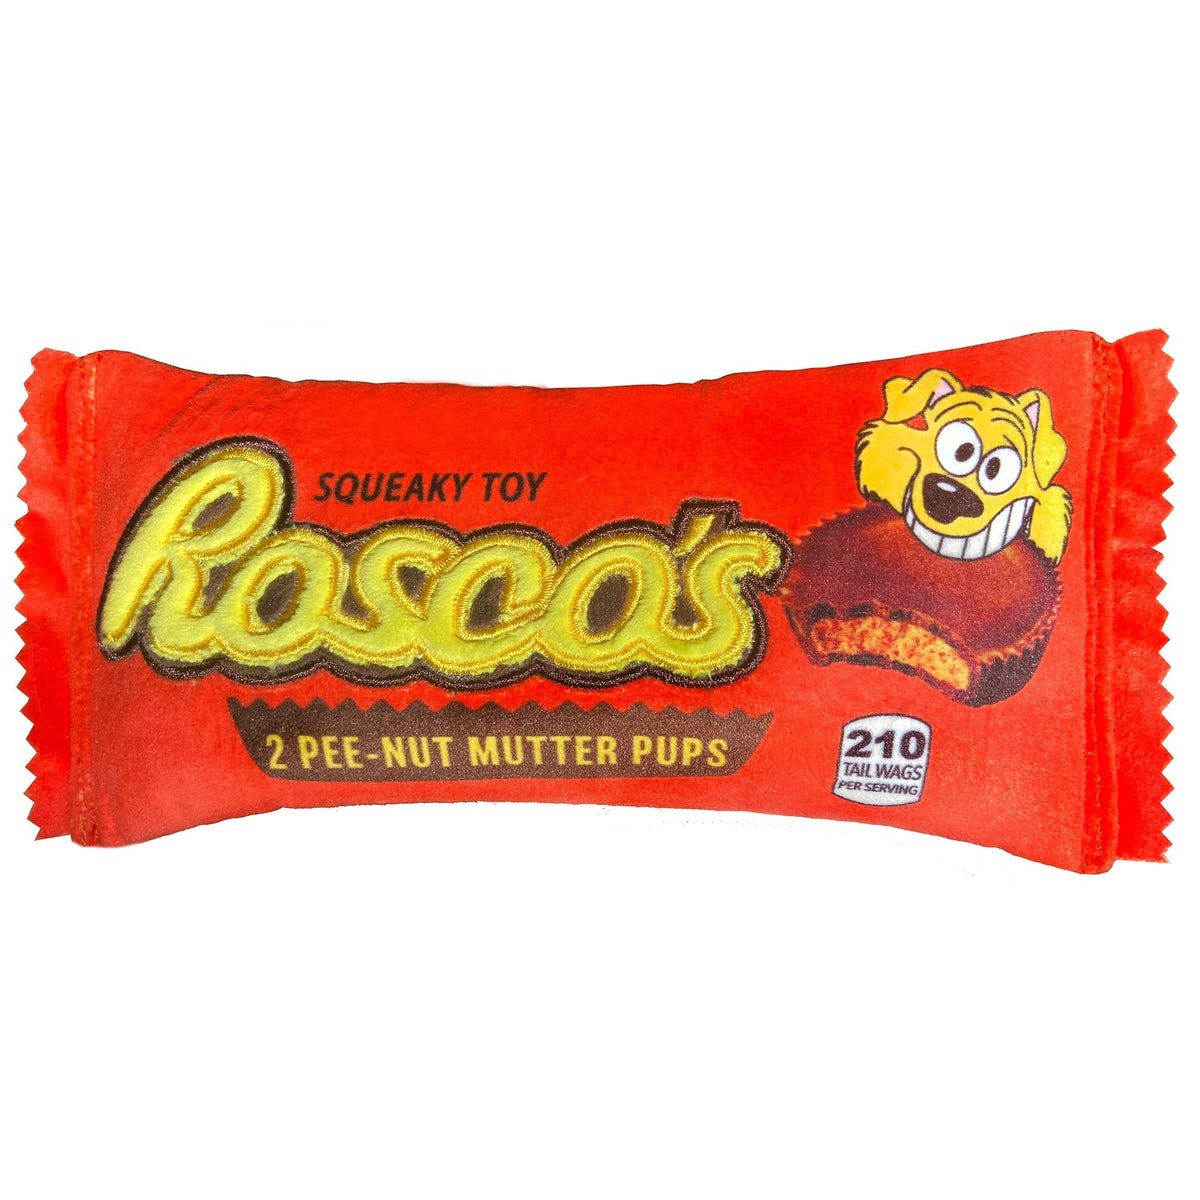 Rosco&#39;s Pee-Nut Mutter Pups